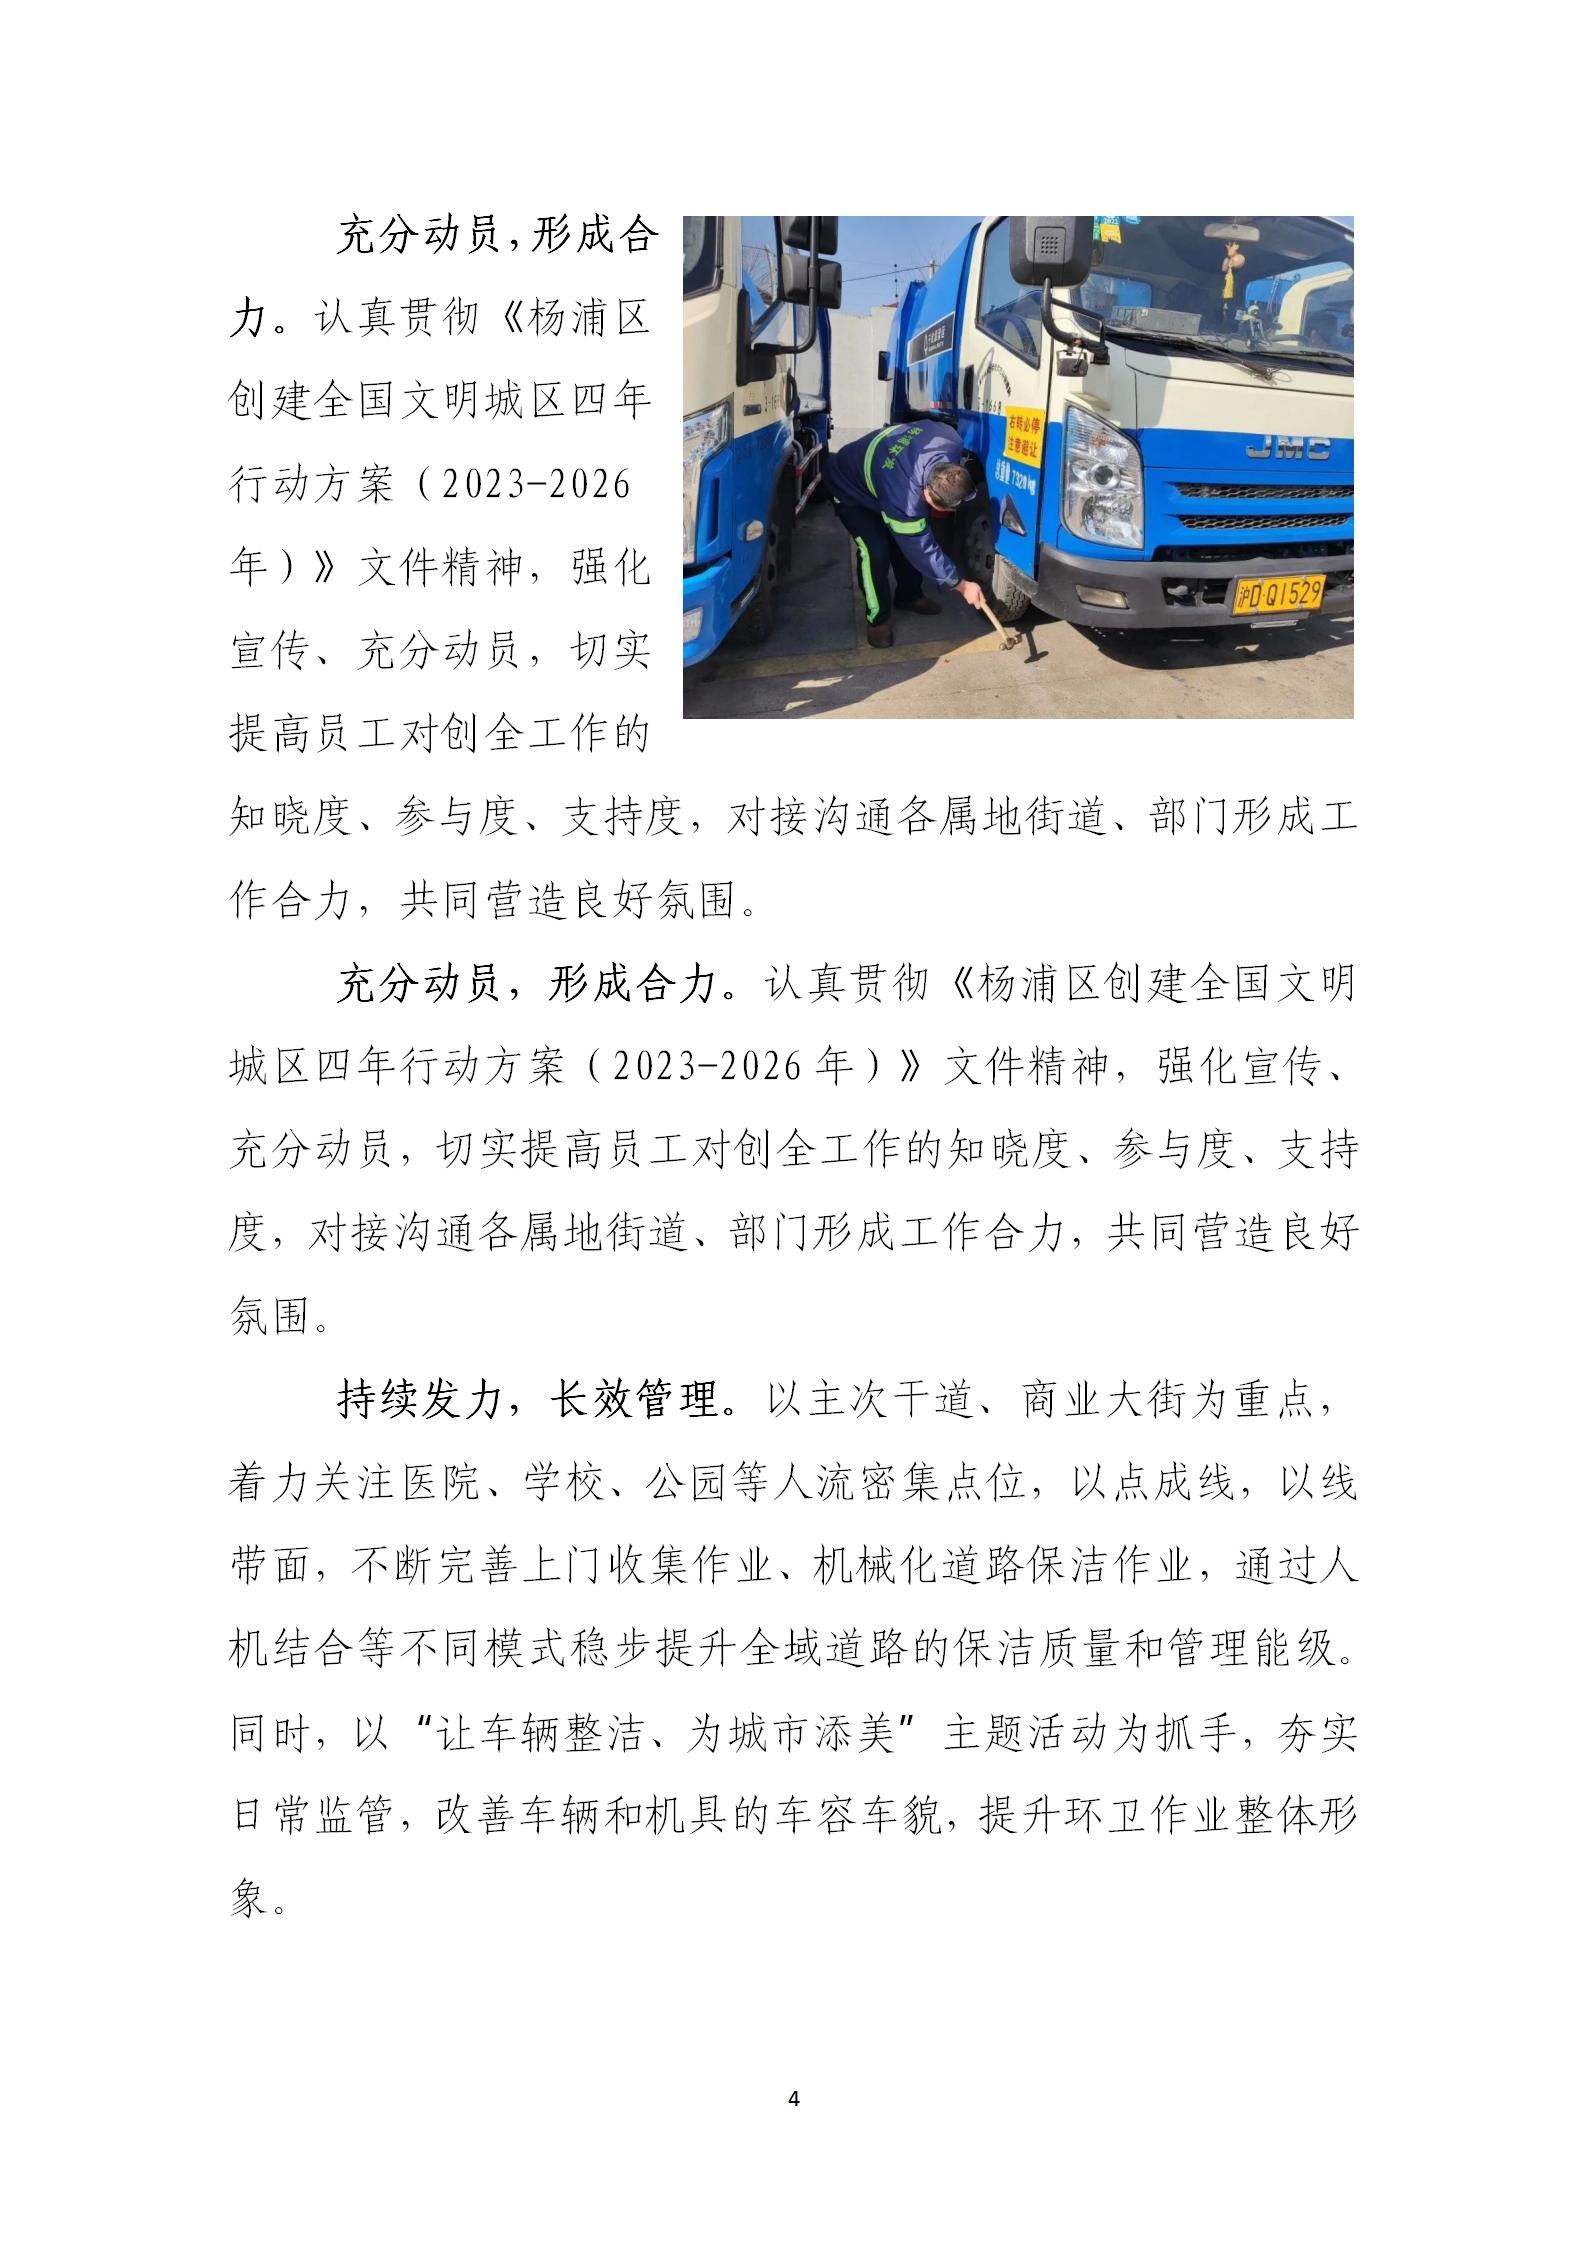 上海市道路保洁与垃圾清运工作月刊  2023年第3期(8)_04.jpg